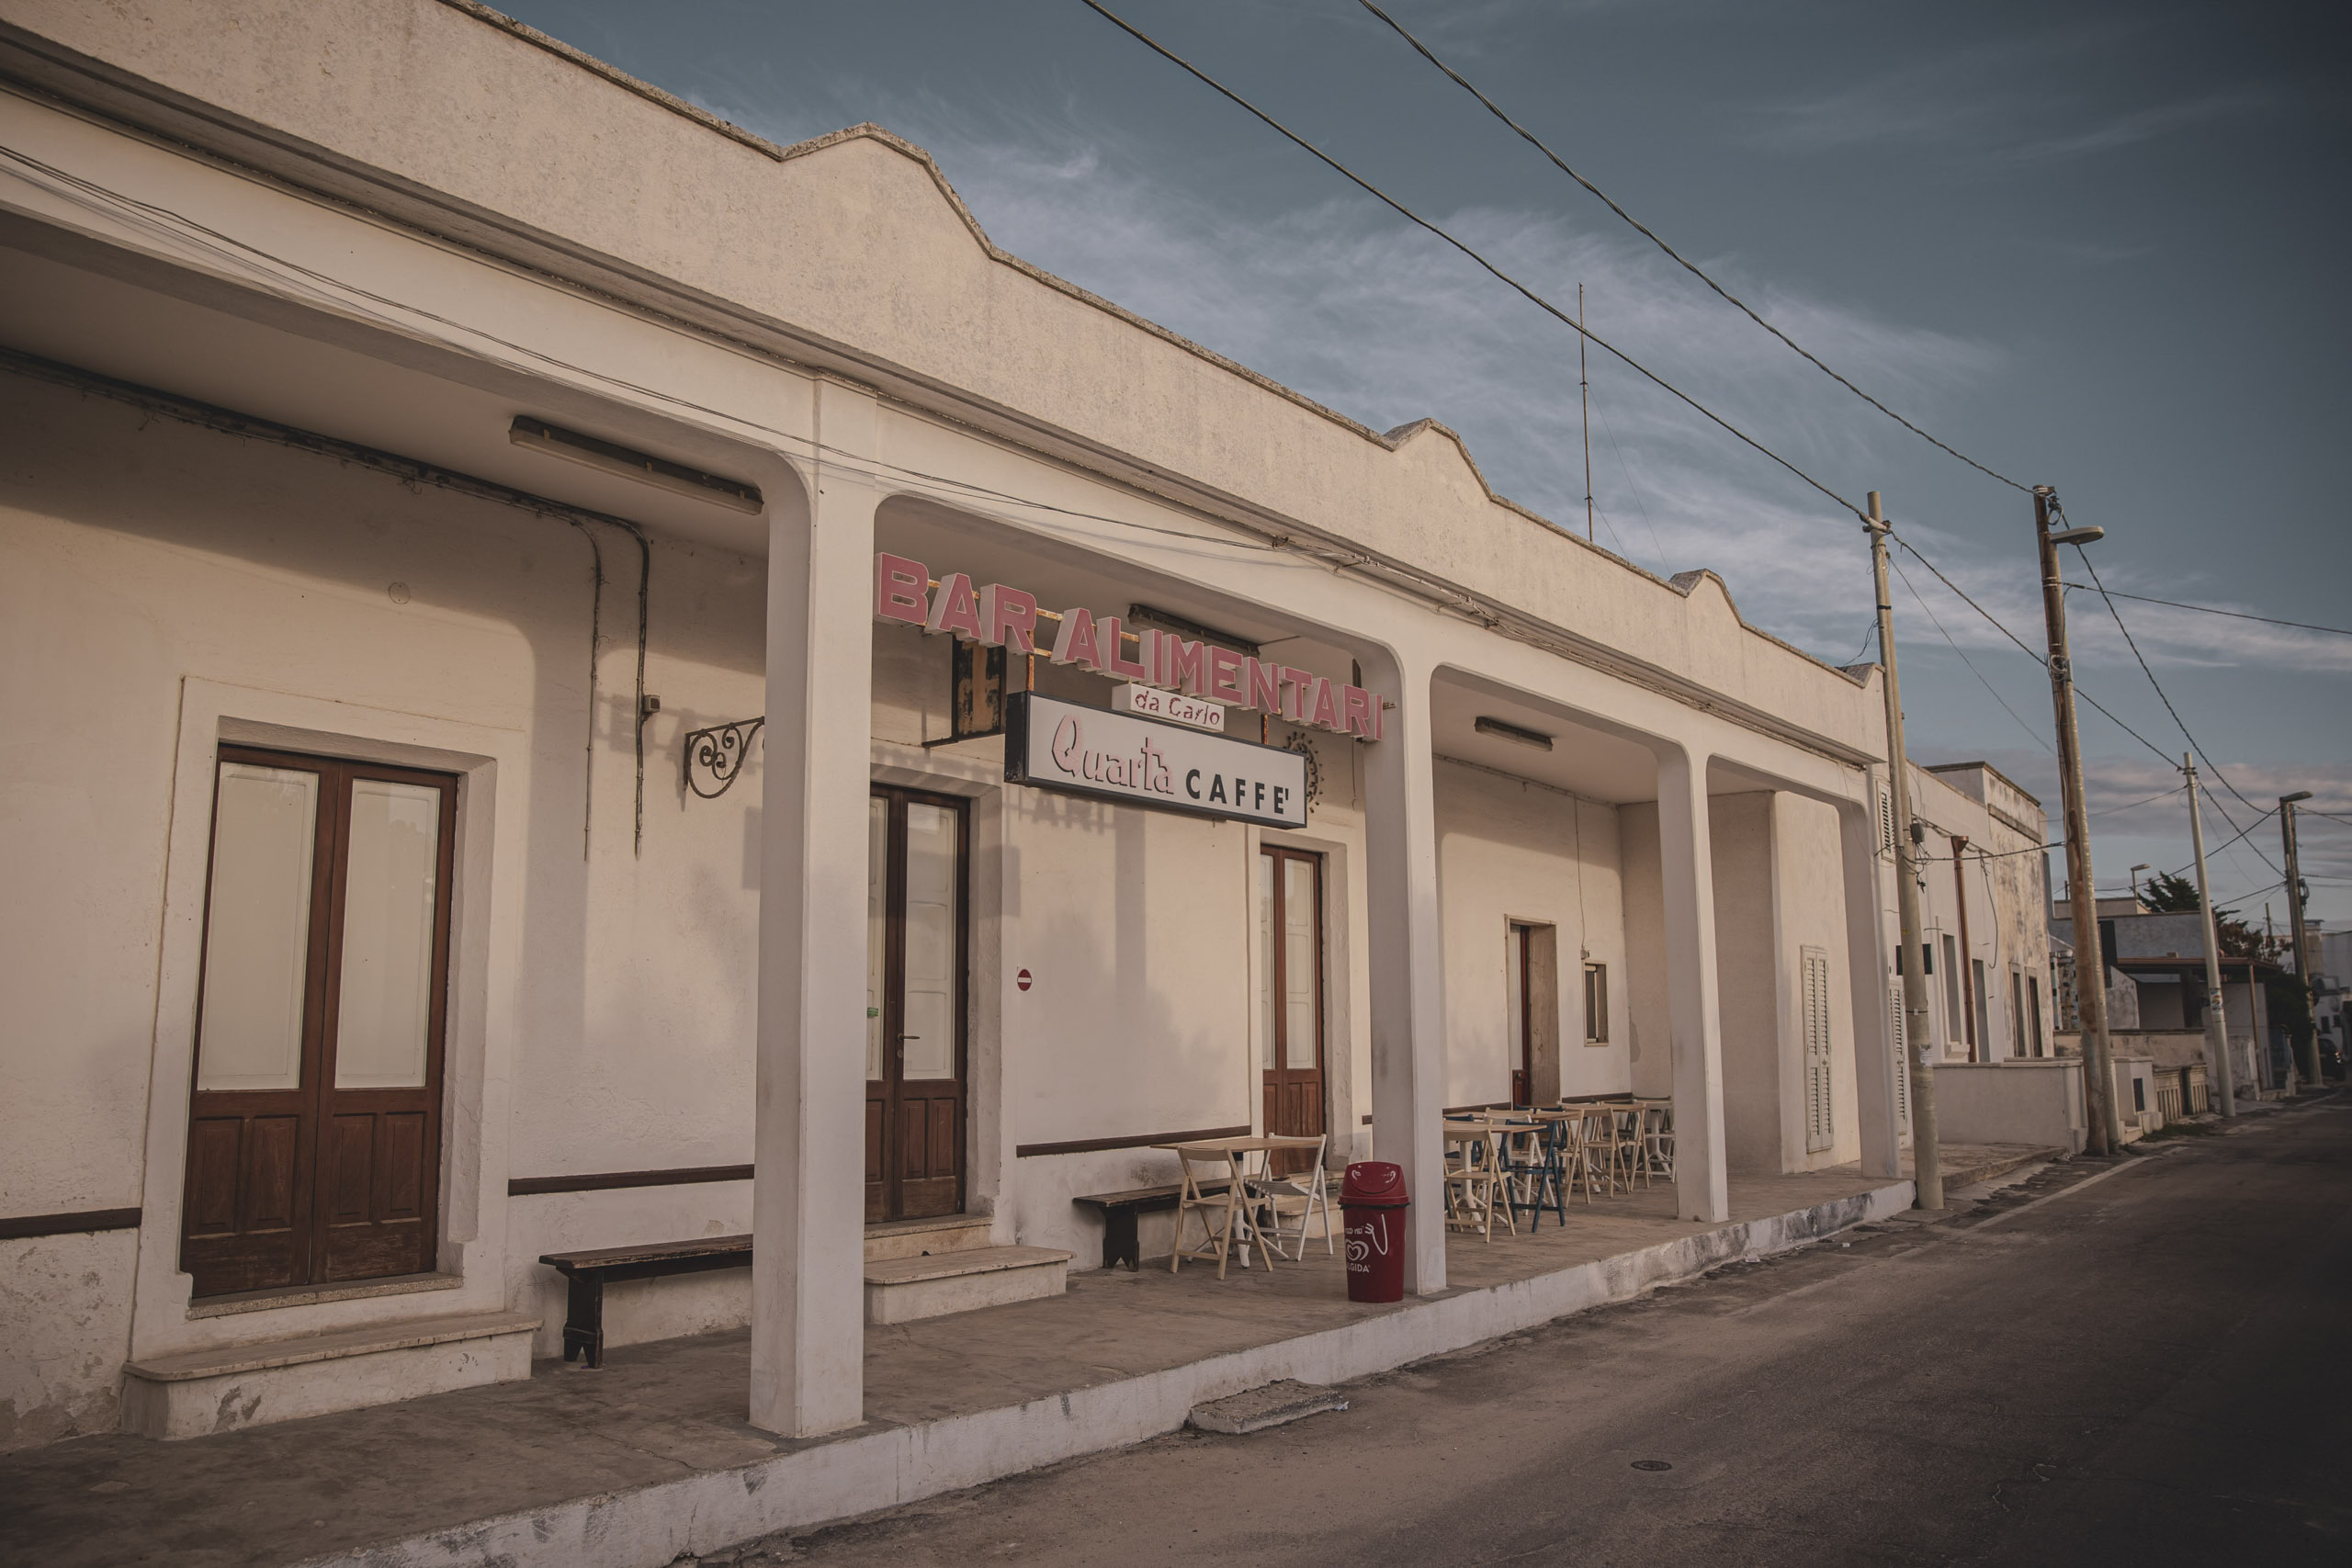 Eine ruhige Straßenszene mit einem einstöckigen Gebäude und einem Schild mit der Aufschrift „Bar Alimentari“, das auf eine lokale Café-Bar in rustikaler Umgebung unter einem klaren Himmel in der Abenddämmerung hinweist. © Fotografie Tomas Rodriguez